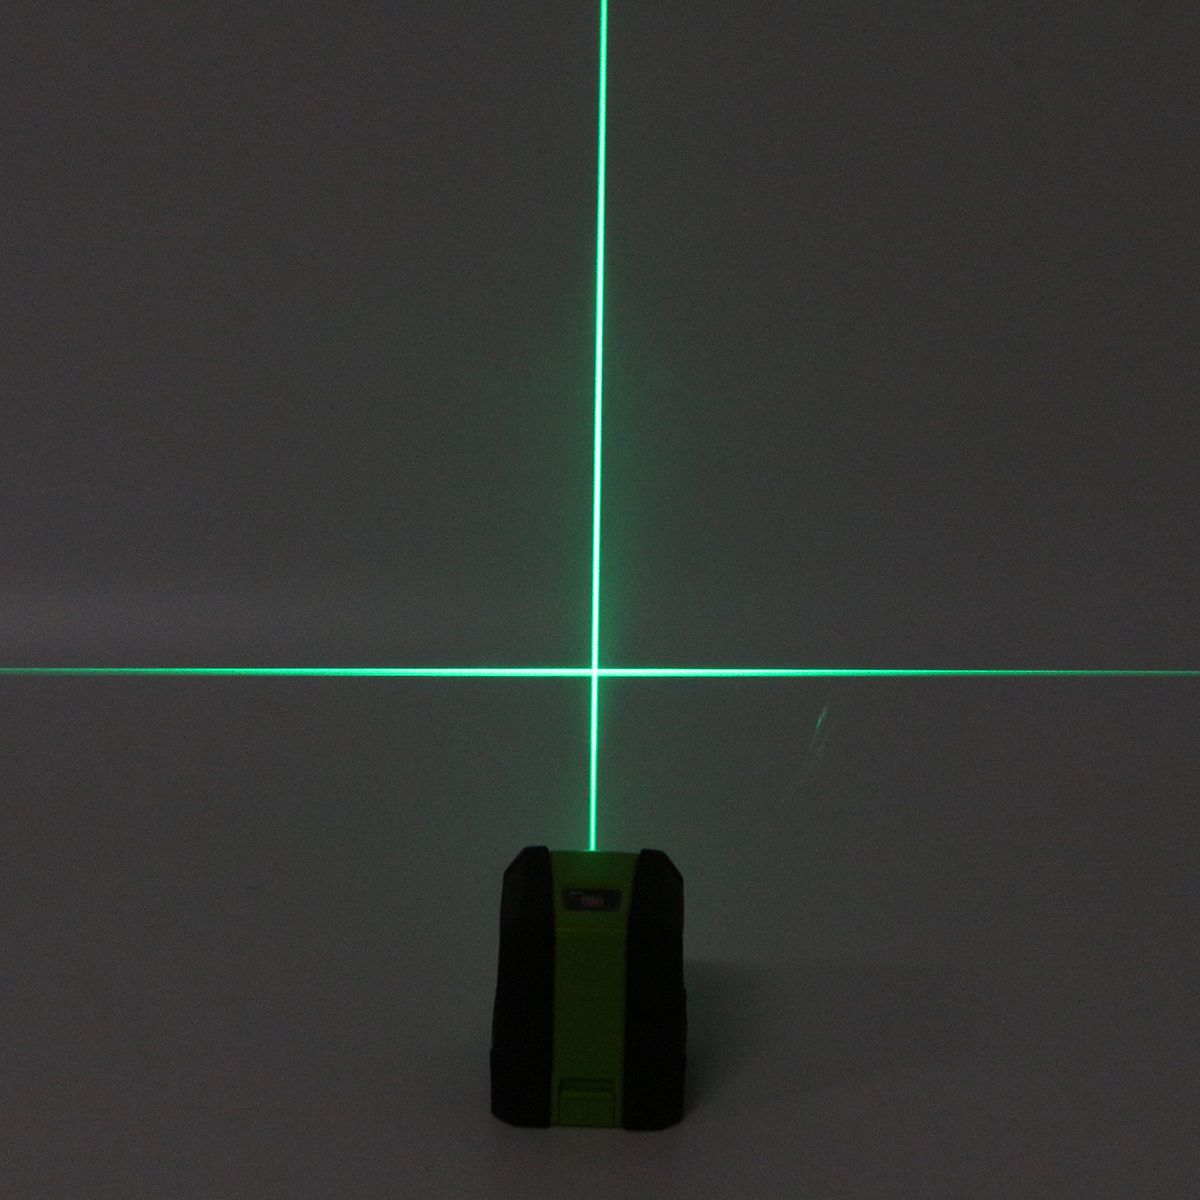 360deg-Rotary-2-Line-Laser-Self-Leveling-Vertical-Horizontal-Level-Green-Measure-Laser-Level-1274189